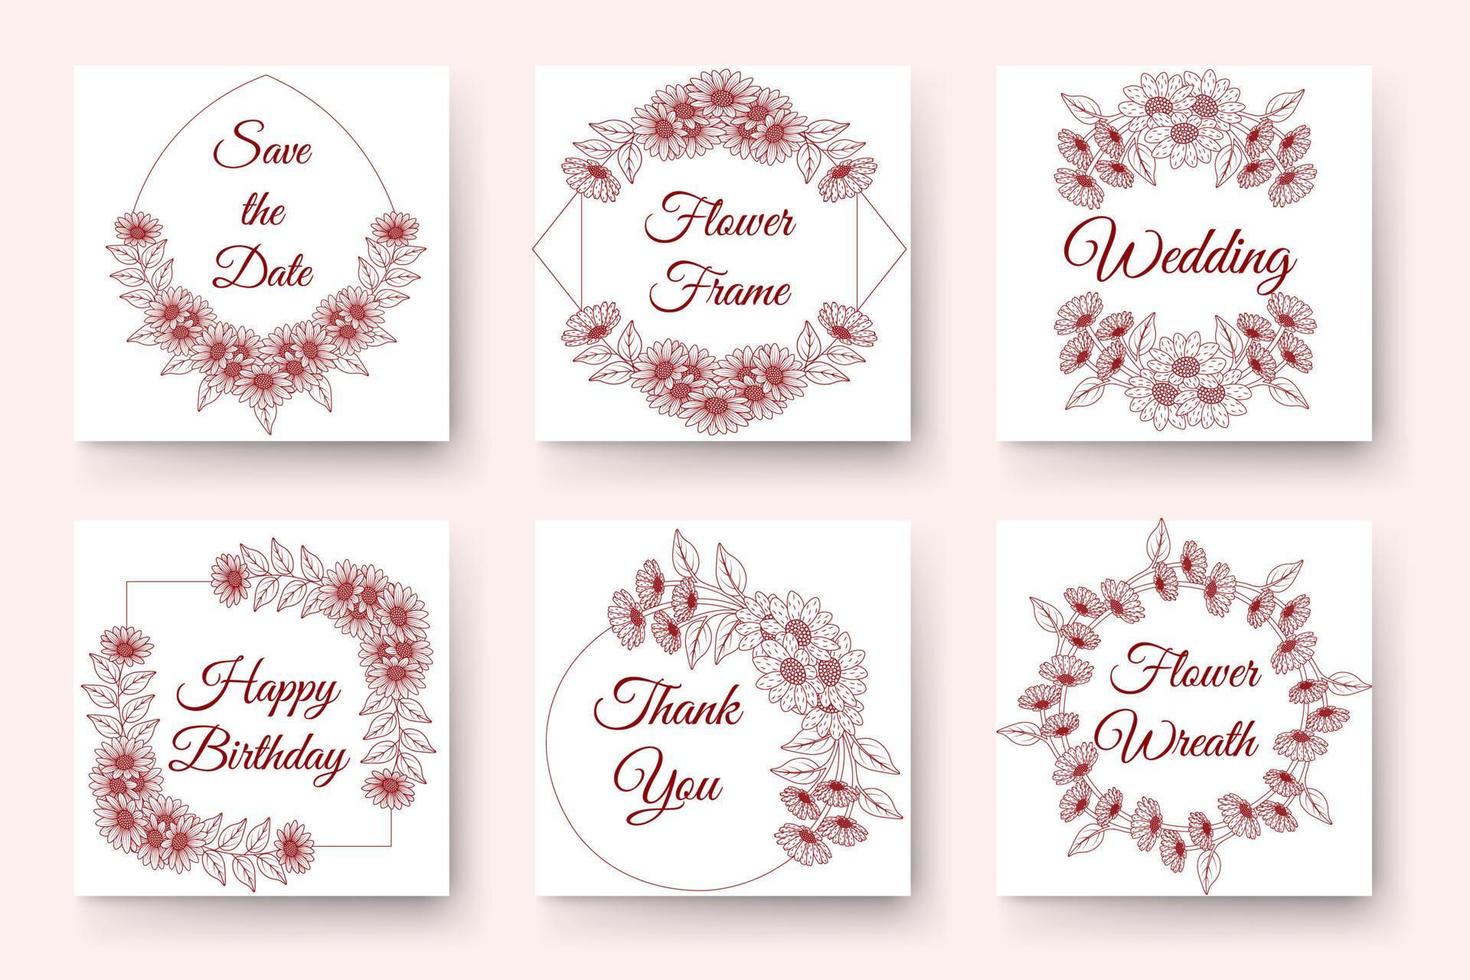 conception de guirlande de fleurs dessinées à la main avec des éléments floraux pour carte d'invitation de mariage anniversaire nouvel an vecteur